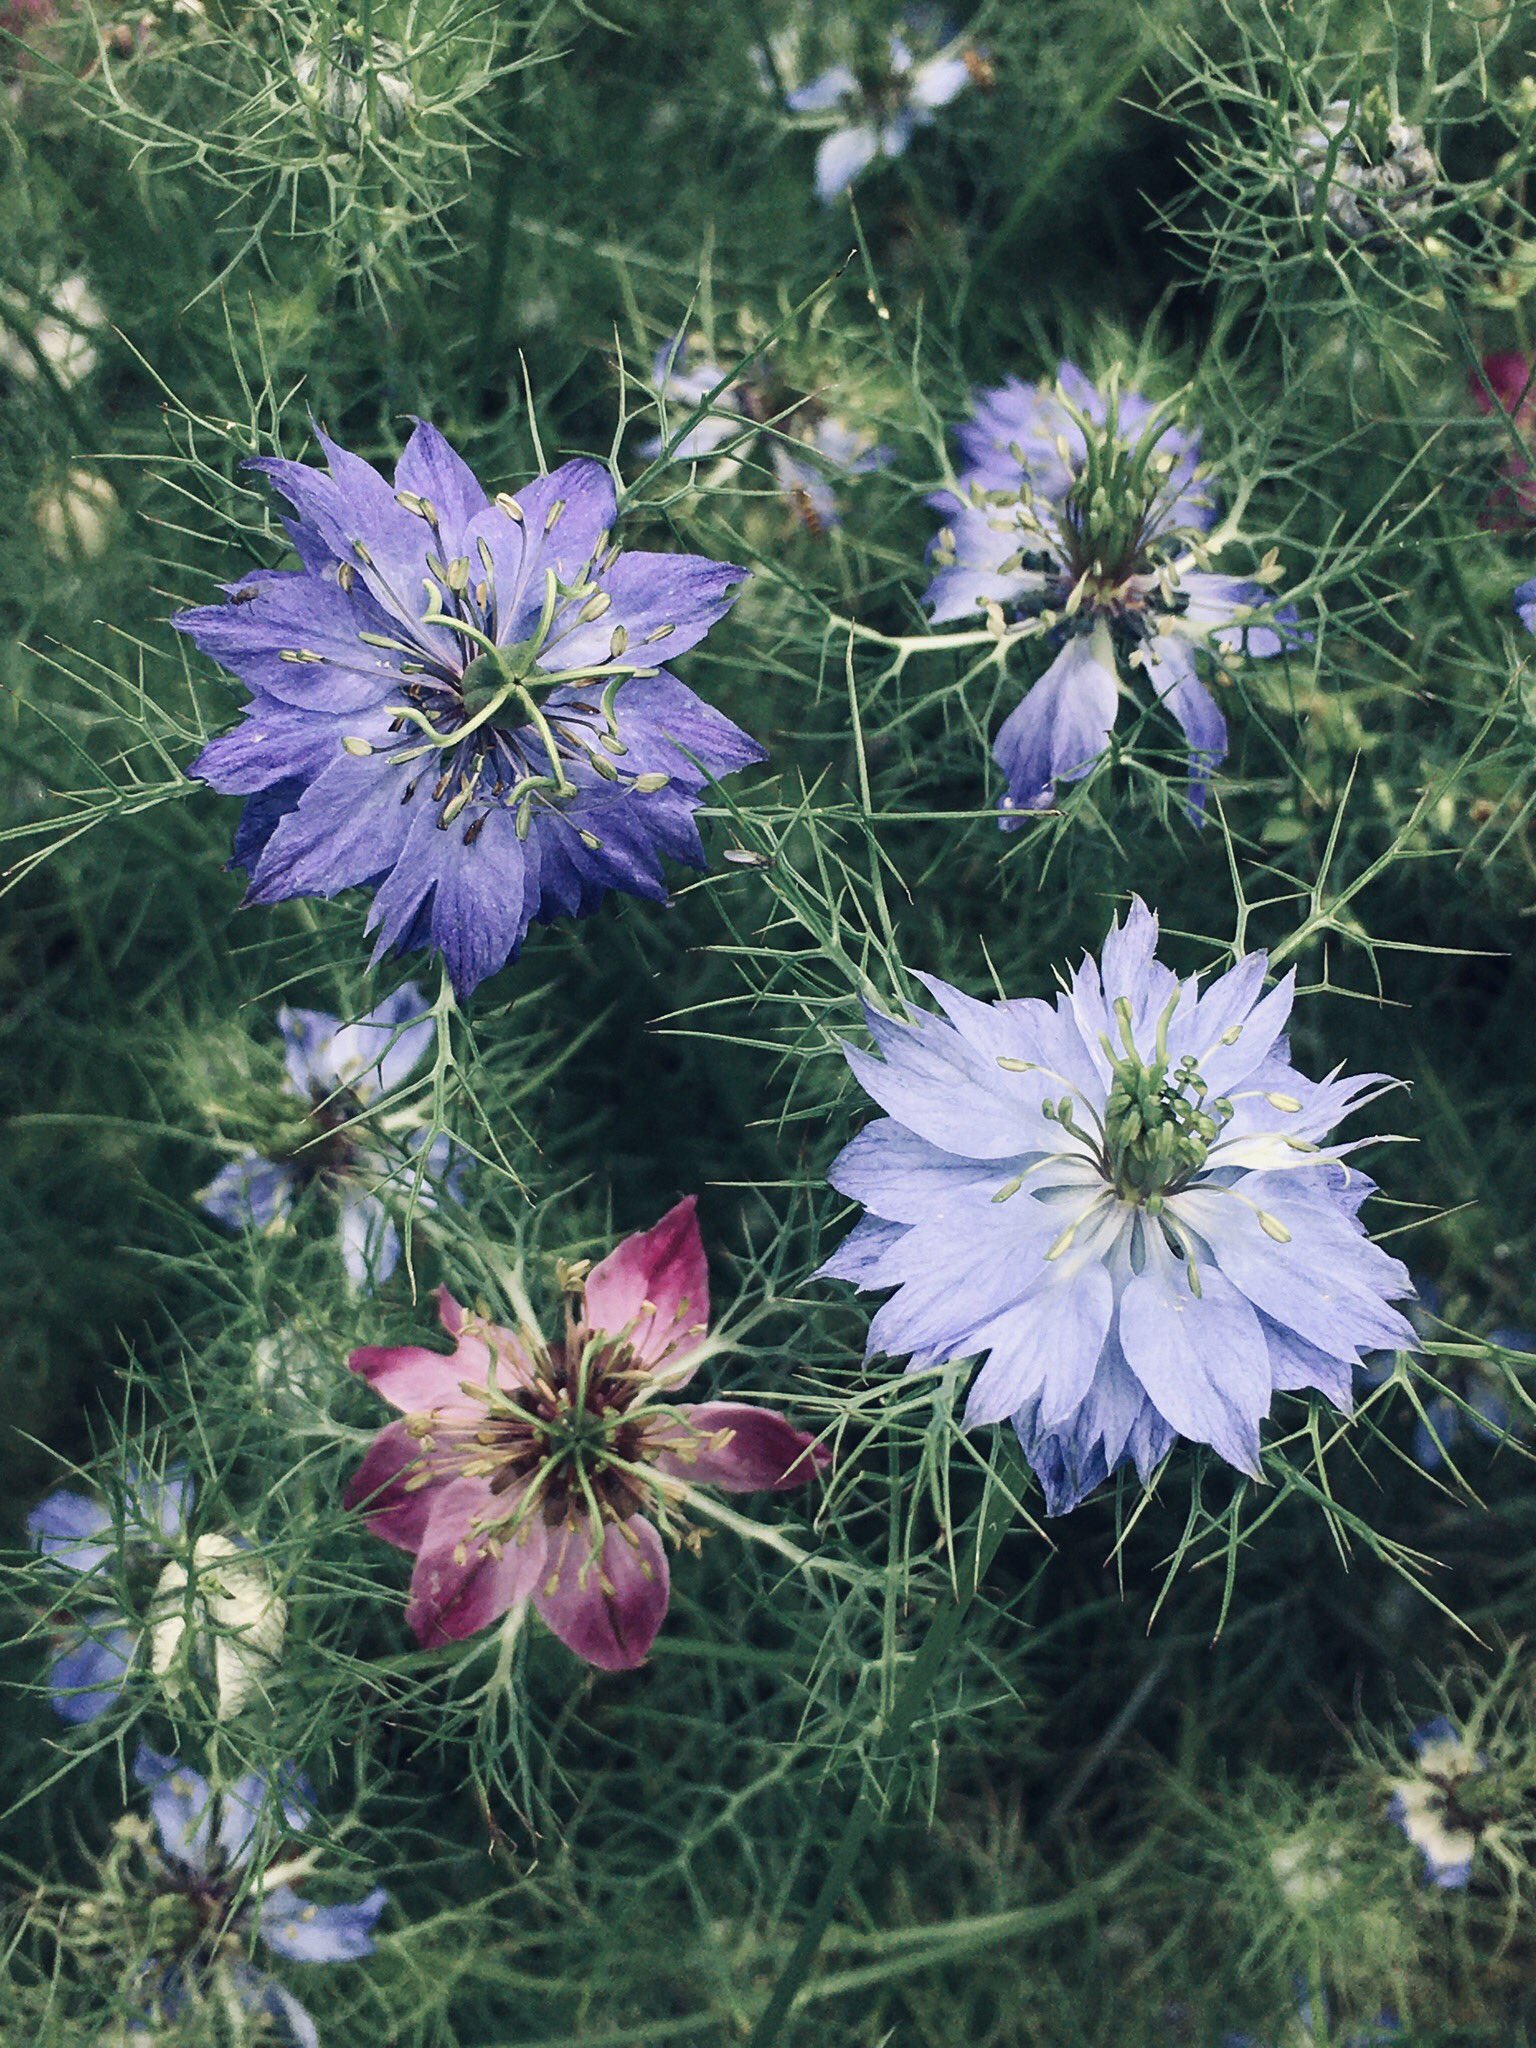 こみくママ様 ニゲラ ペルシャンジュエル キンポウゲ科クロタネソウ属 白 青 紫 ピンク 赤紫色 色採り採りのニゲラは去年植えた 花の種子が溢れ落ちた物です 自然に増えた花が 力强く咲いてくれました T Co Ch3wmdzdvf Twitter